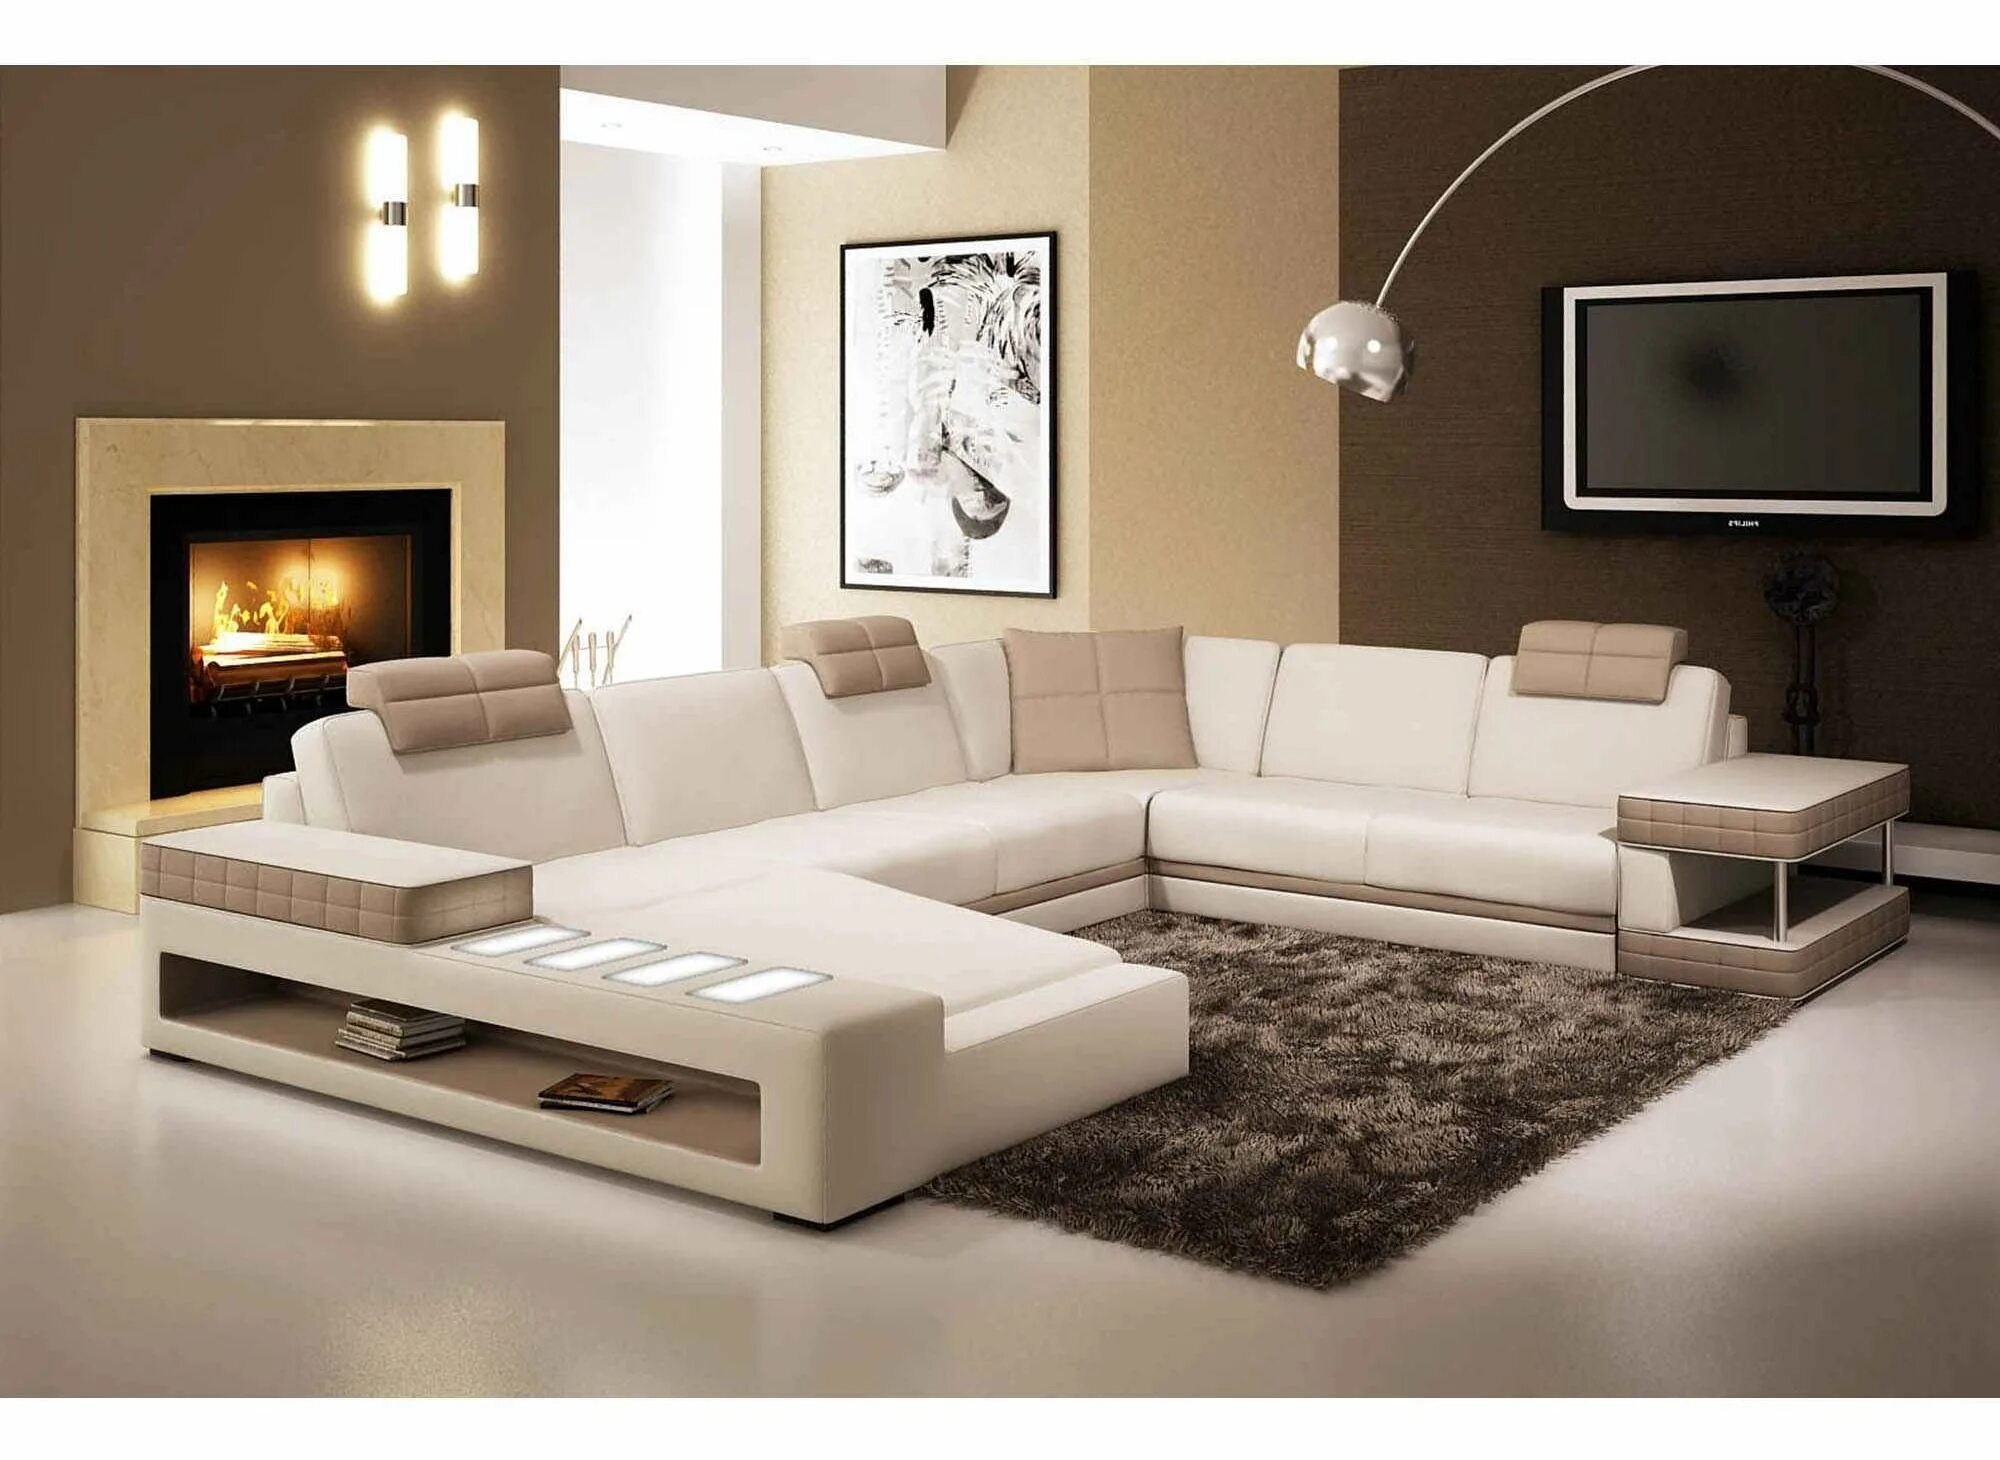 Современные угловые диваны для гостиной. Красивые диваны для гостиной. Современные диваны для гостиной. Угловой диван в интерьере гостиной. Современная мягкая мебель для гостиной.